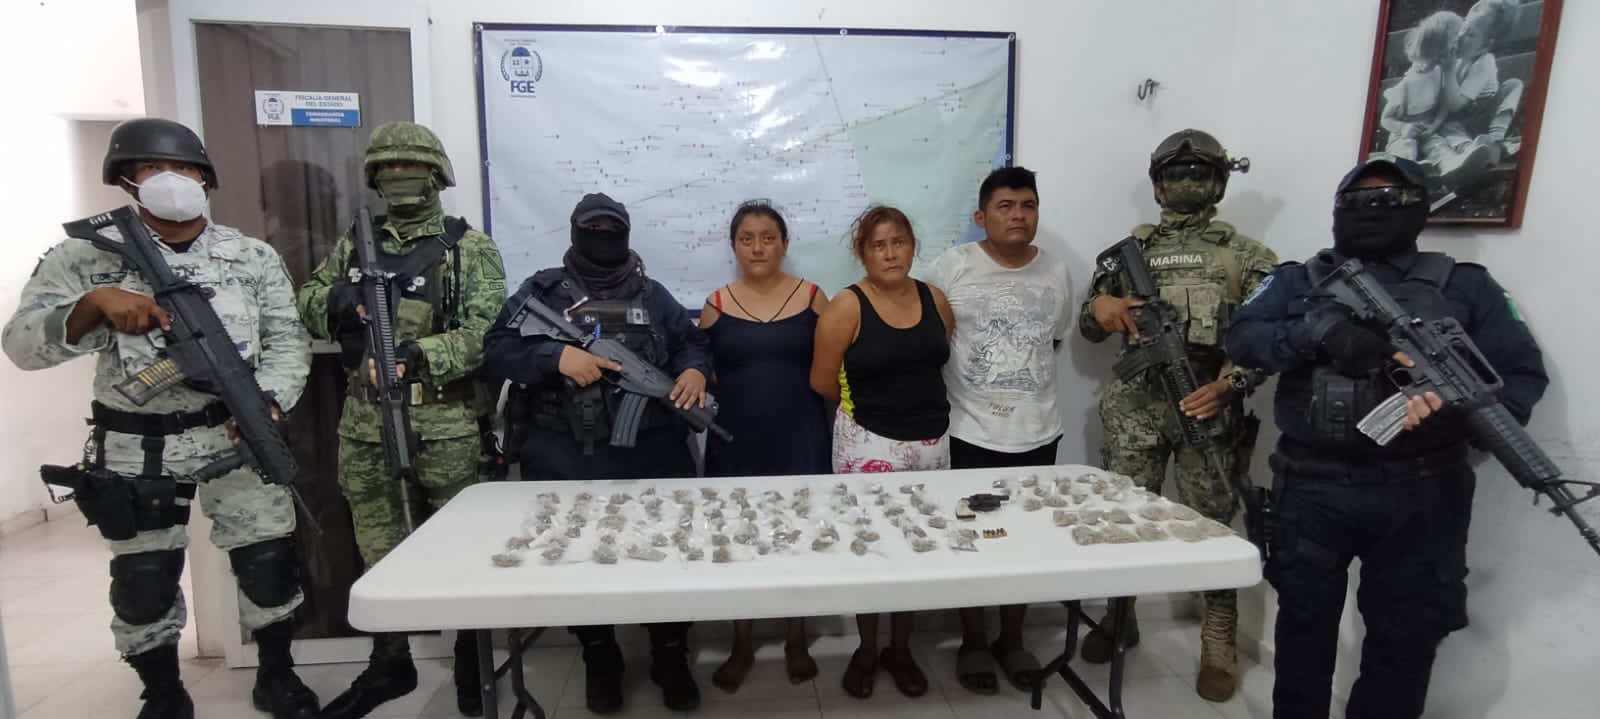  Detienen a dos mujeres y un hombre con una pistola y marihuana en Tulum